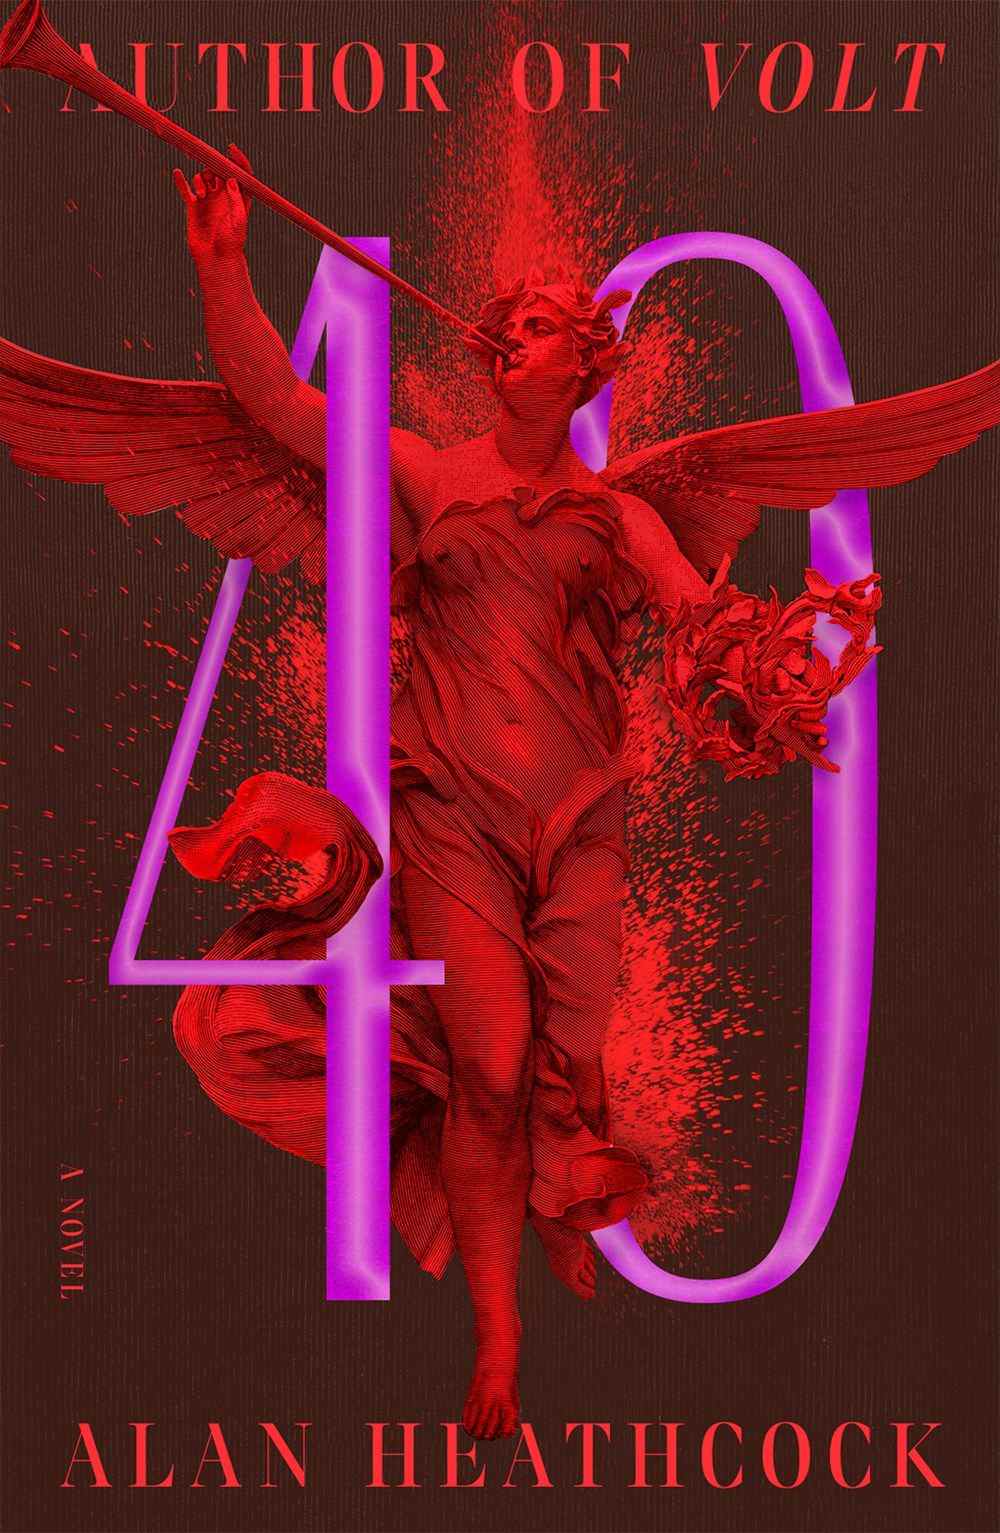 Image de couverture de 40 par Alan Heathcock, une image lumineuse avec une figure en forme d'ange rouge à l'intérieur des chiffres 4 et 0.